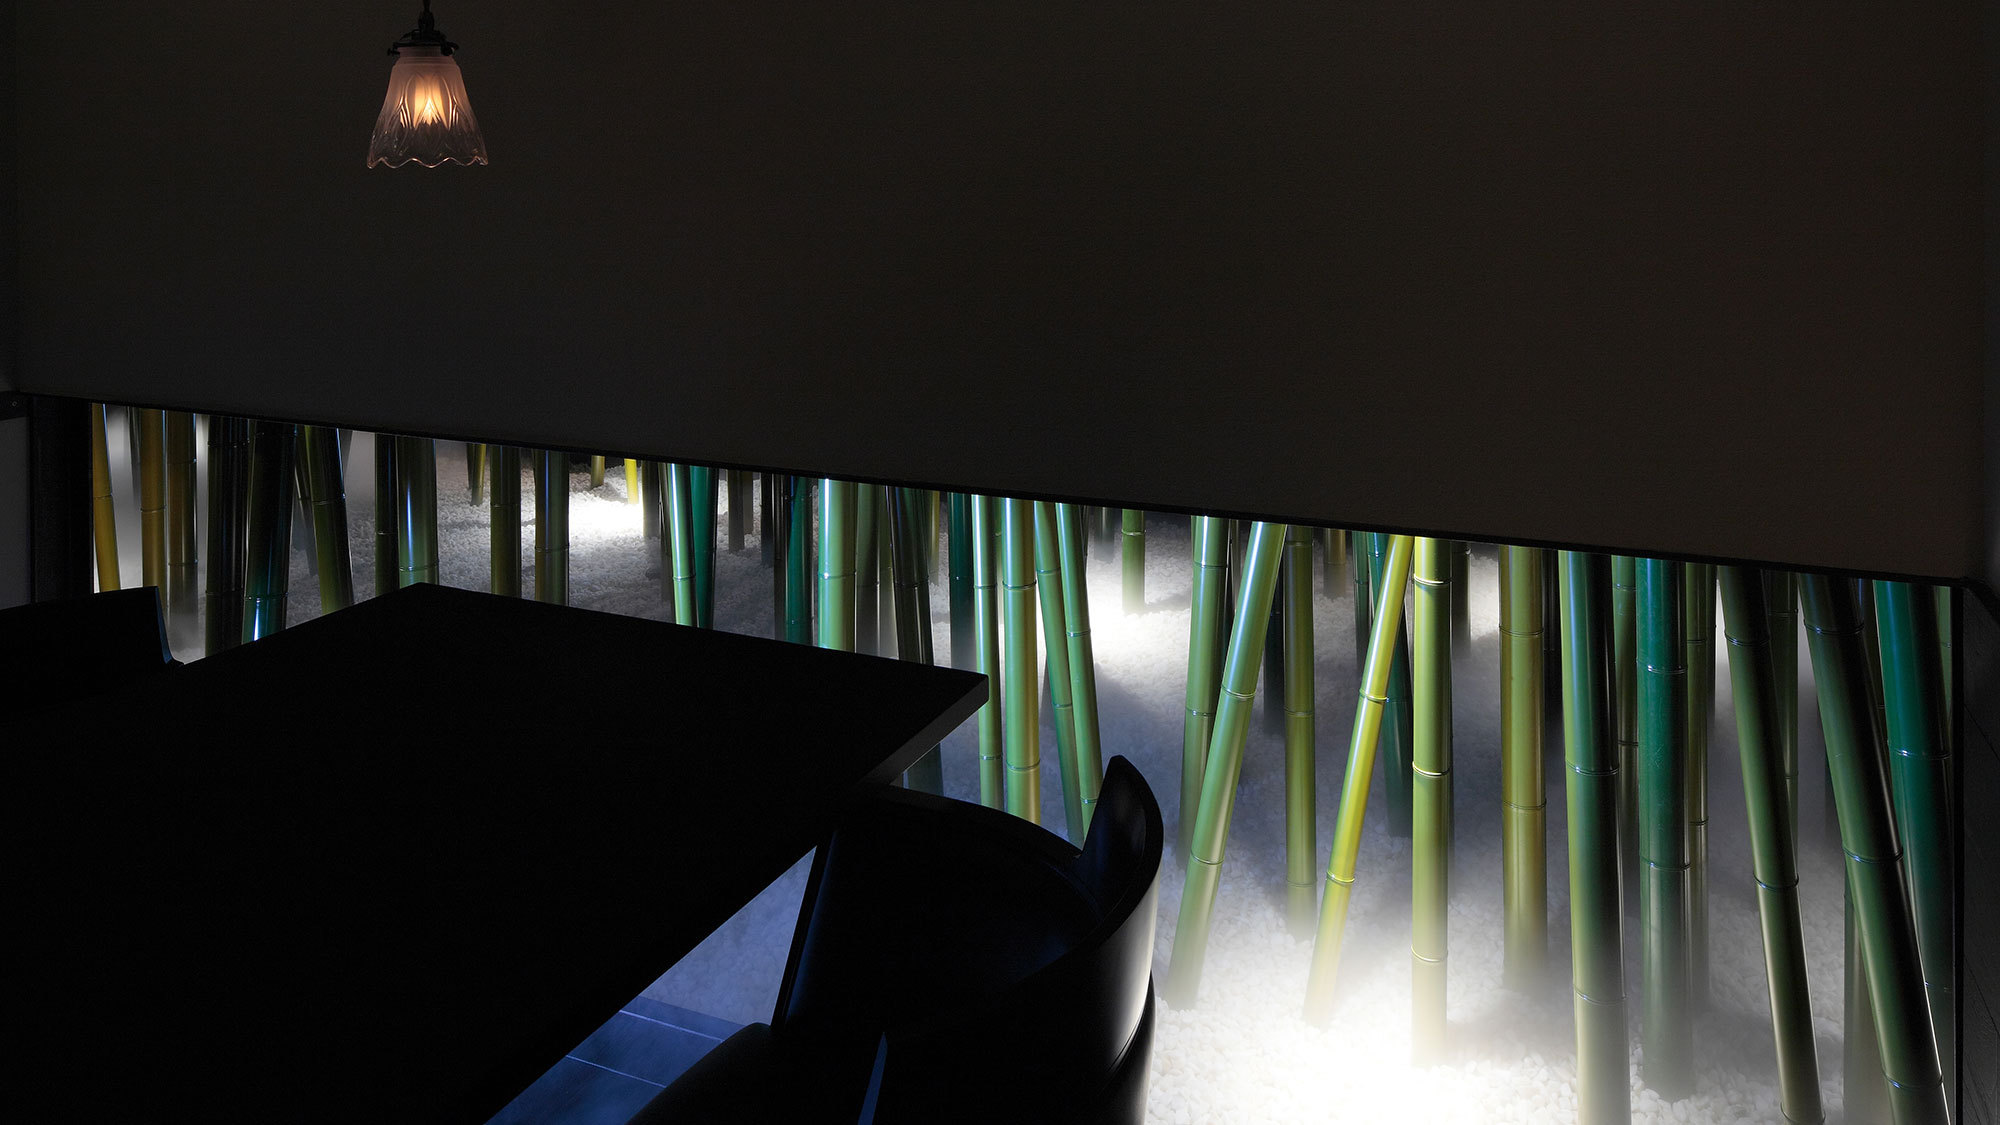 【食事処CHIKURIN】竹林をモチーフとしたモダンな個室の会場ではゆっくりと時間が流れます…;